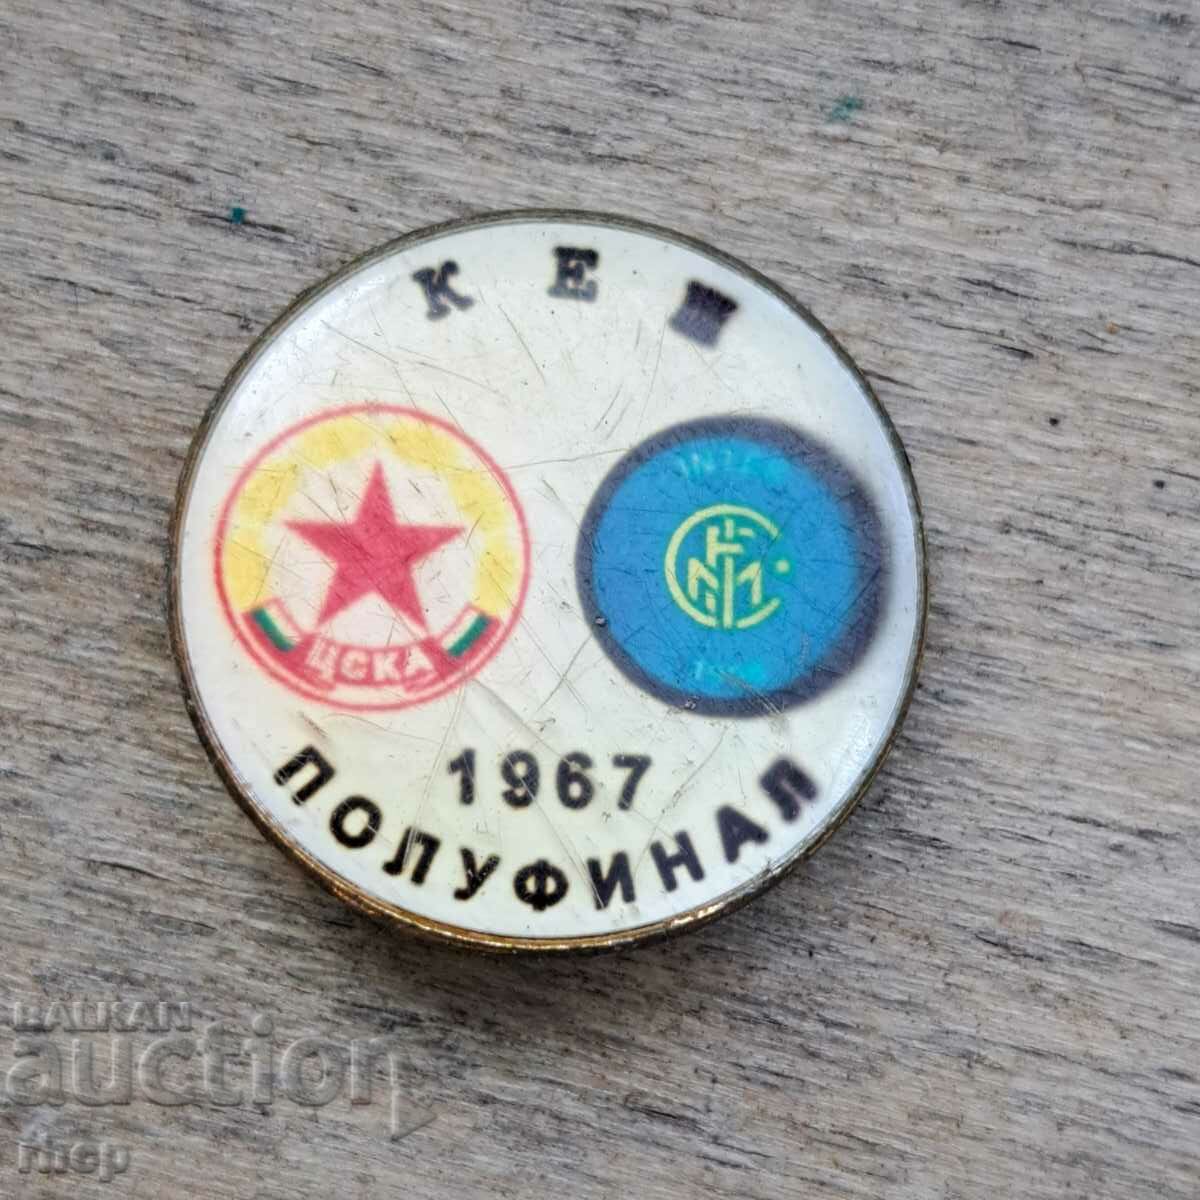 ΤΣΣΚΑ - Ίντερ 1967 ΜΕΤΡΗΤΑ παλιό σήμα ποδόσφαιρο